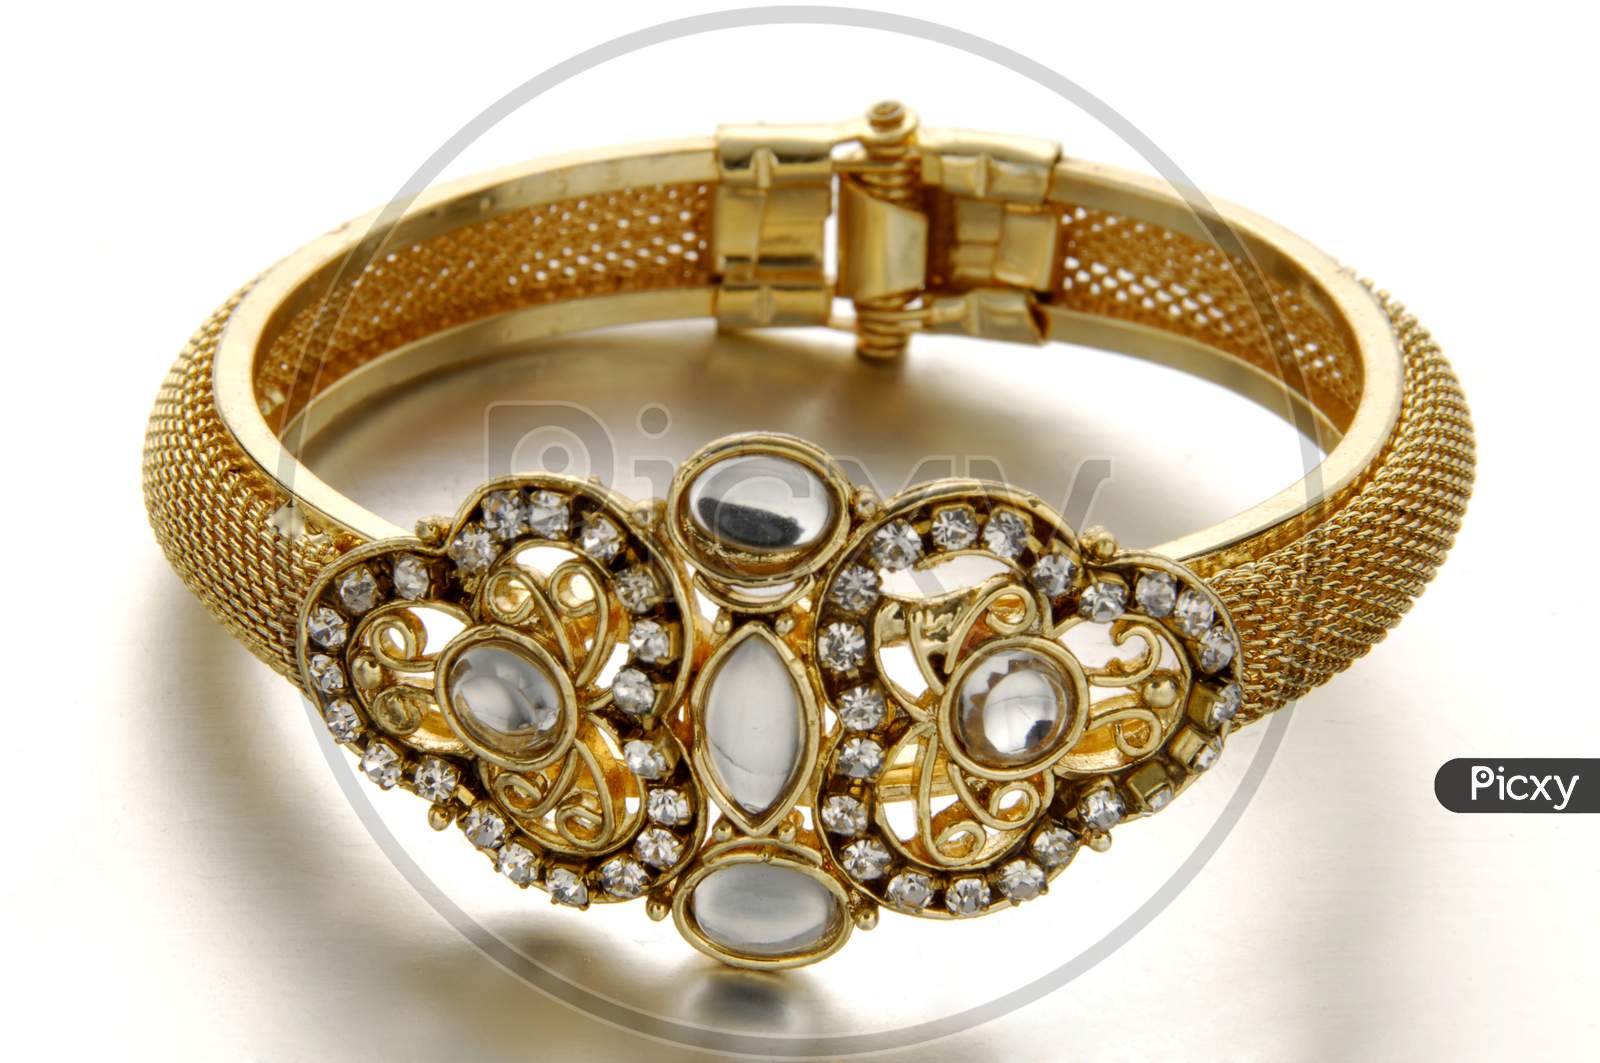 Gemstone bracelet with oxidized gold